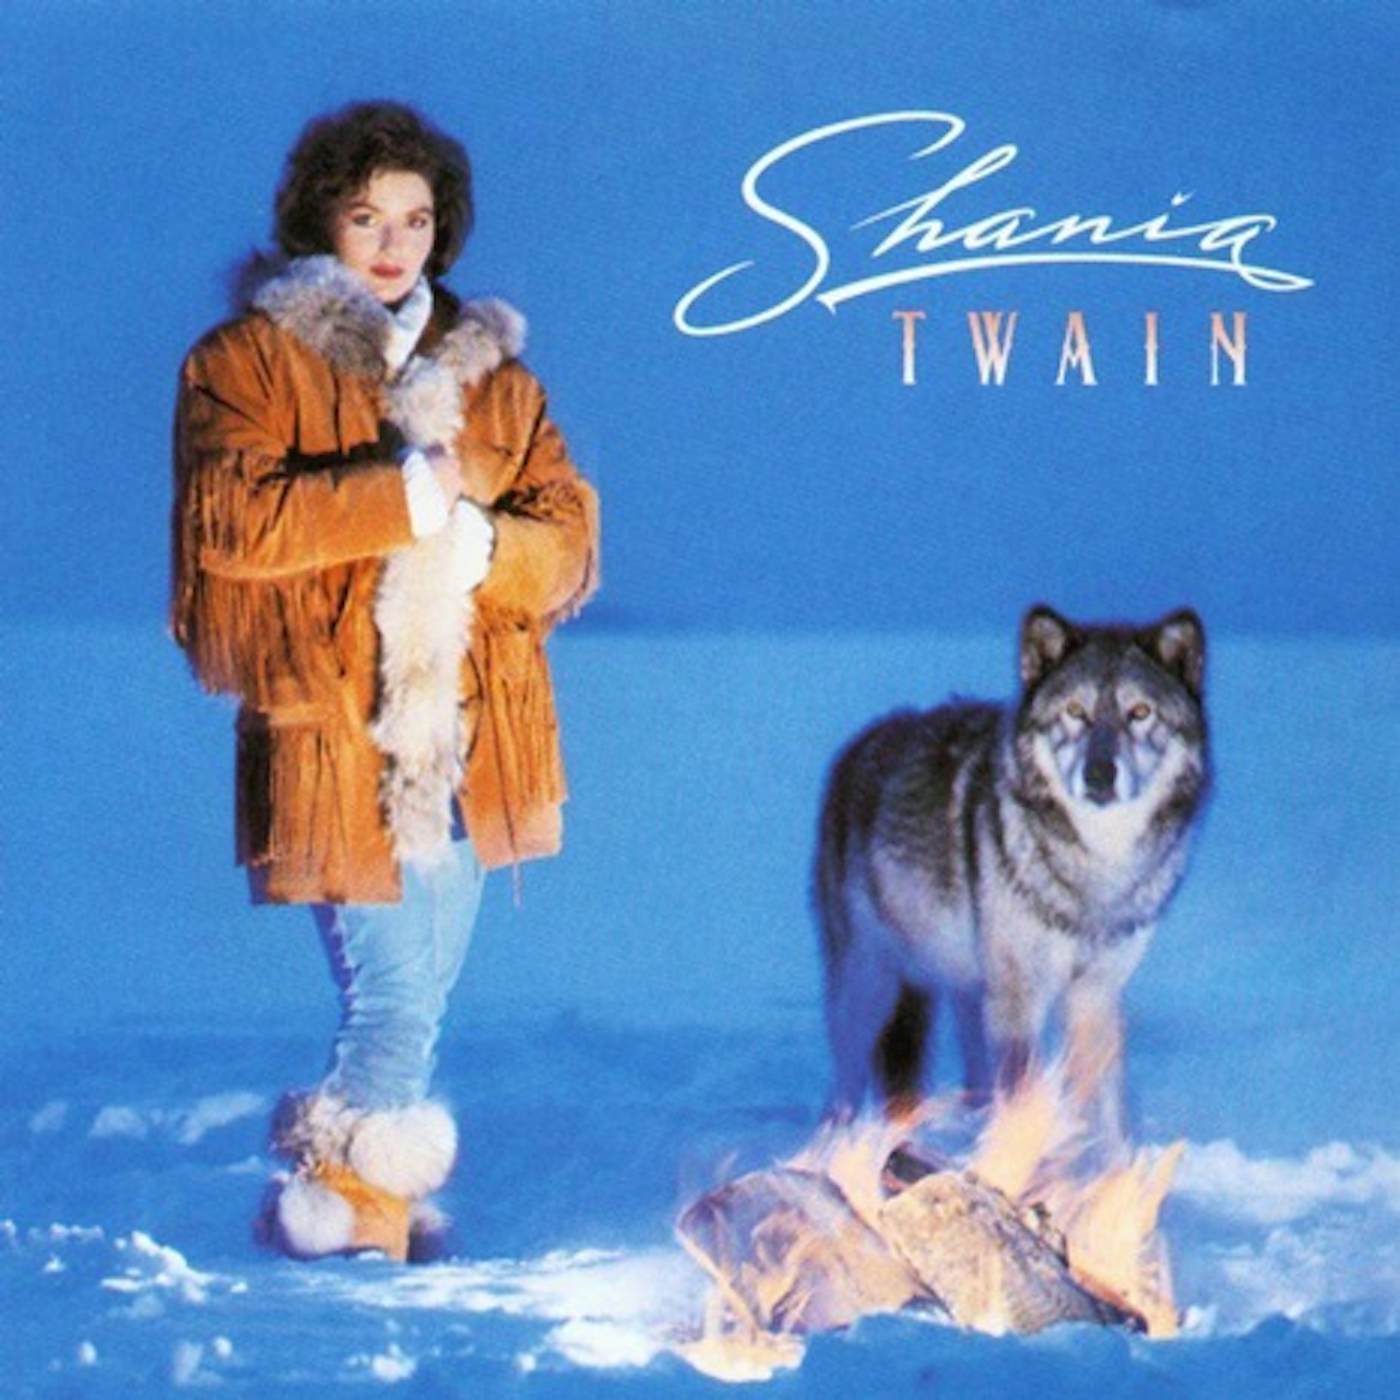 Shania Twain Vinyl Record